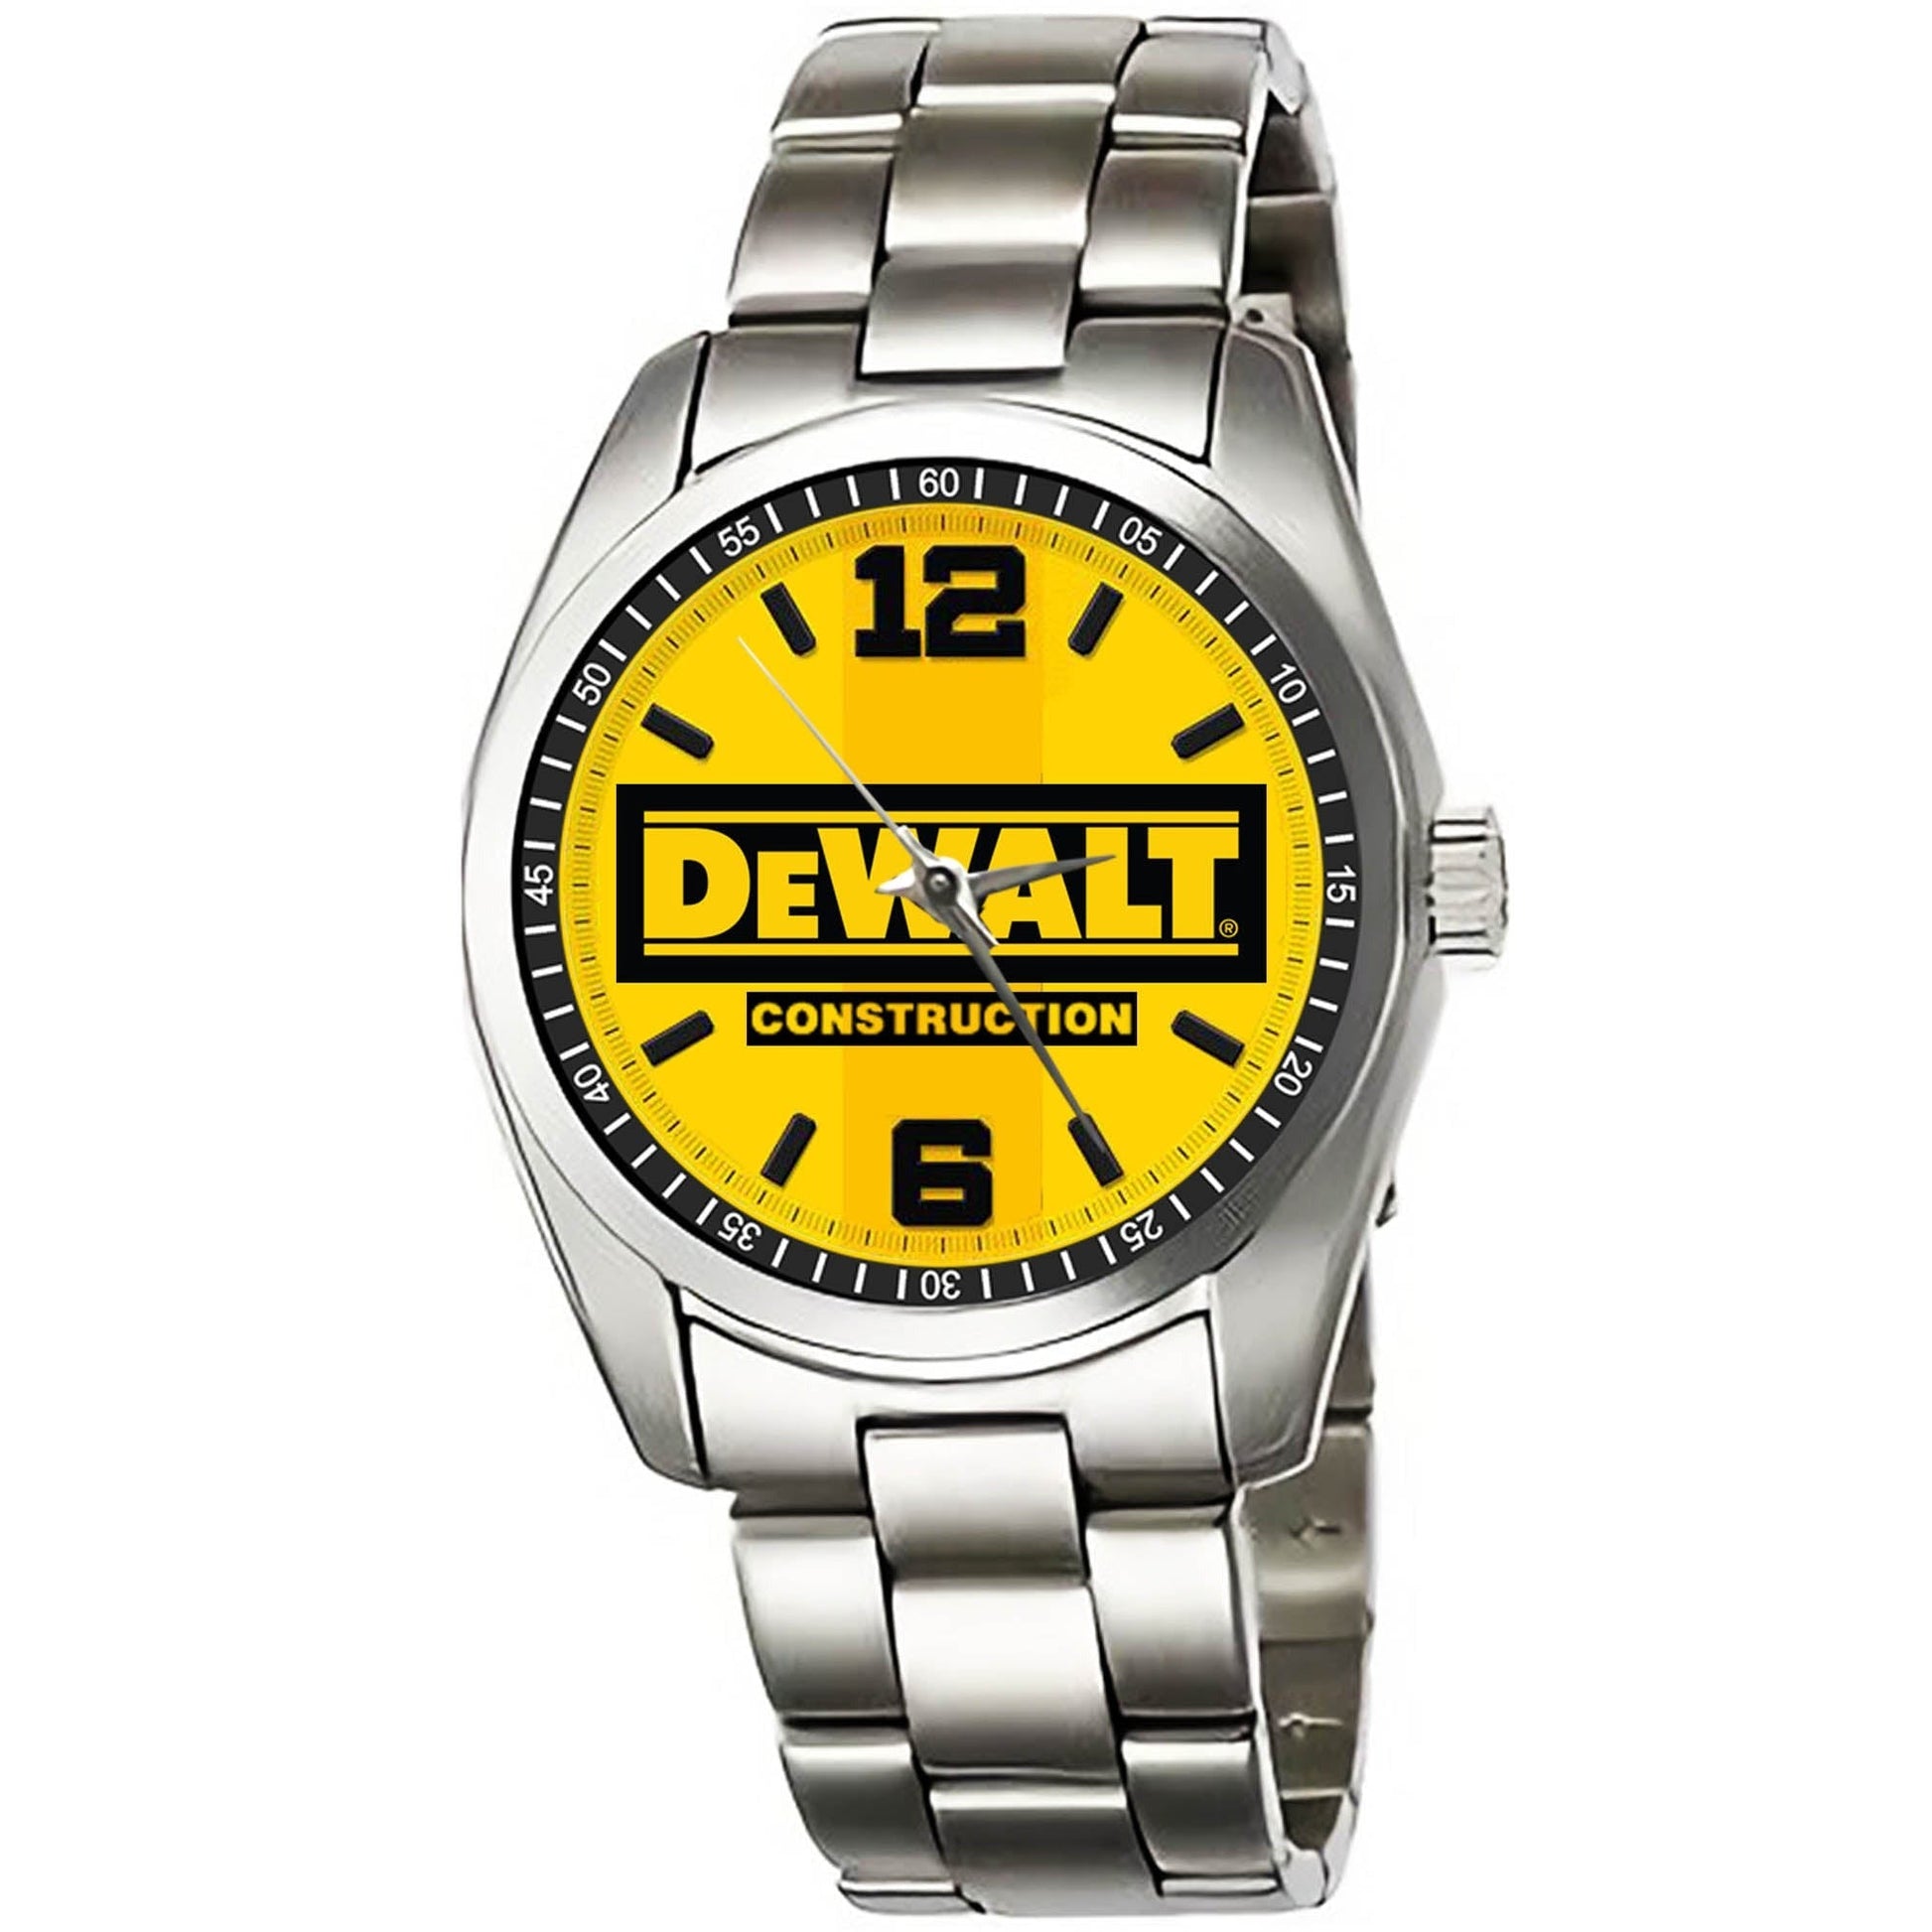 DeWalt Construction Watches KP145